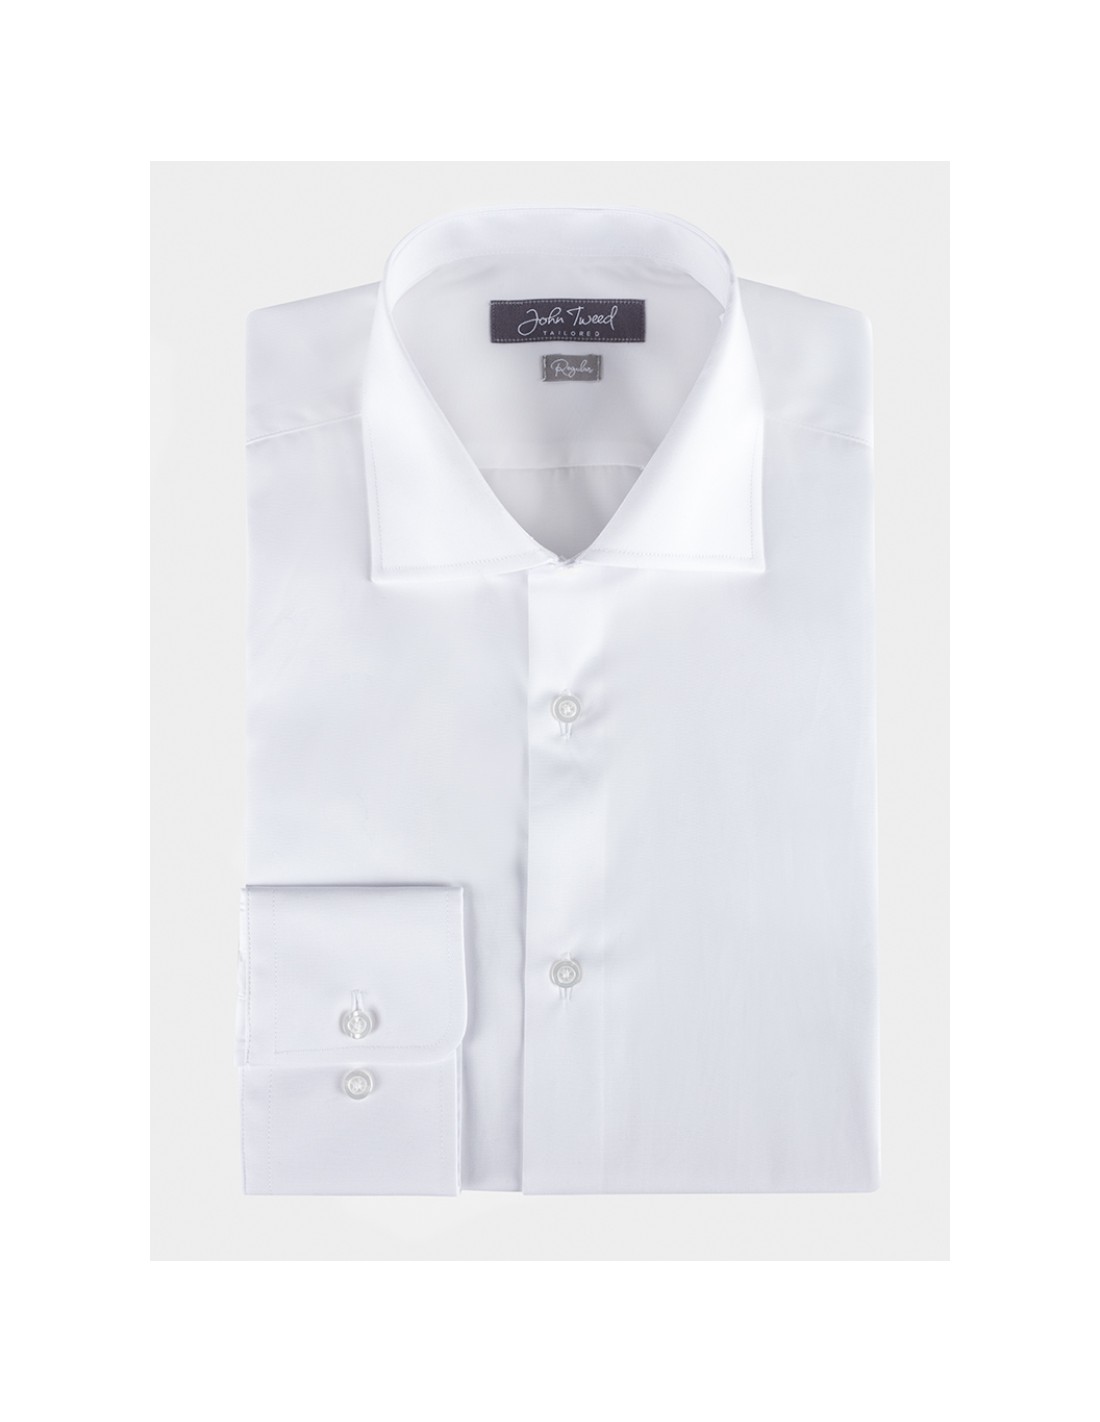 Camisa Algodão Branca Punho Simples